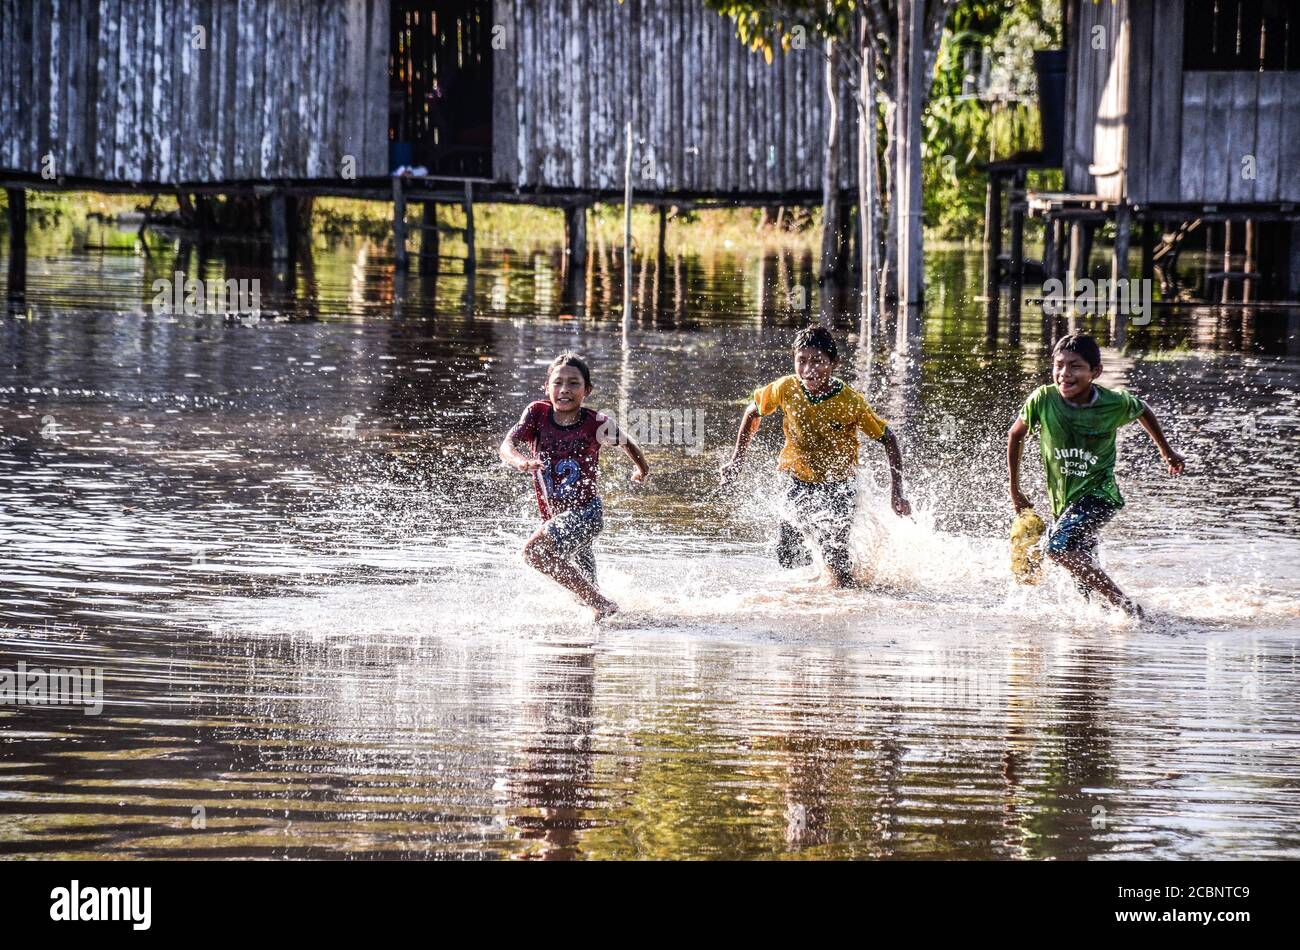 Boys running on water Stock Photo